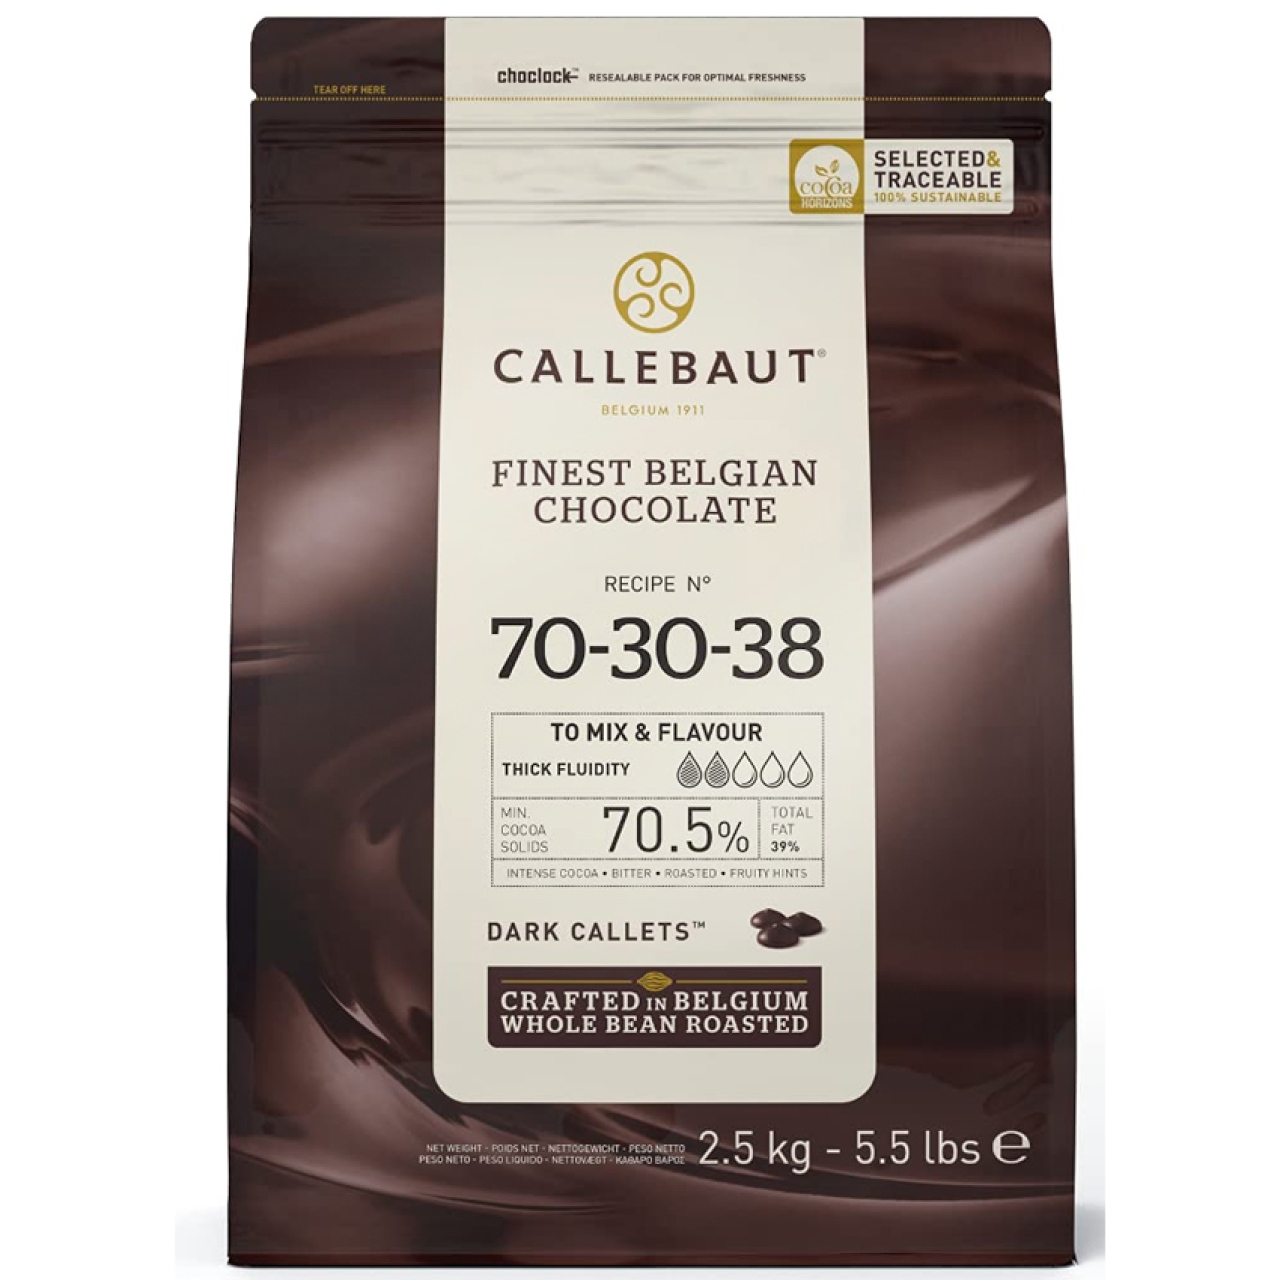 Callbaut 70-30-38